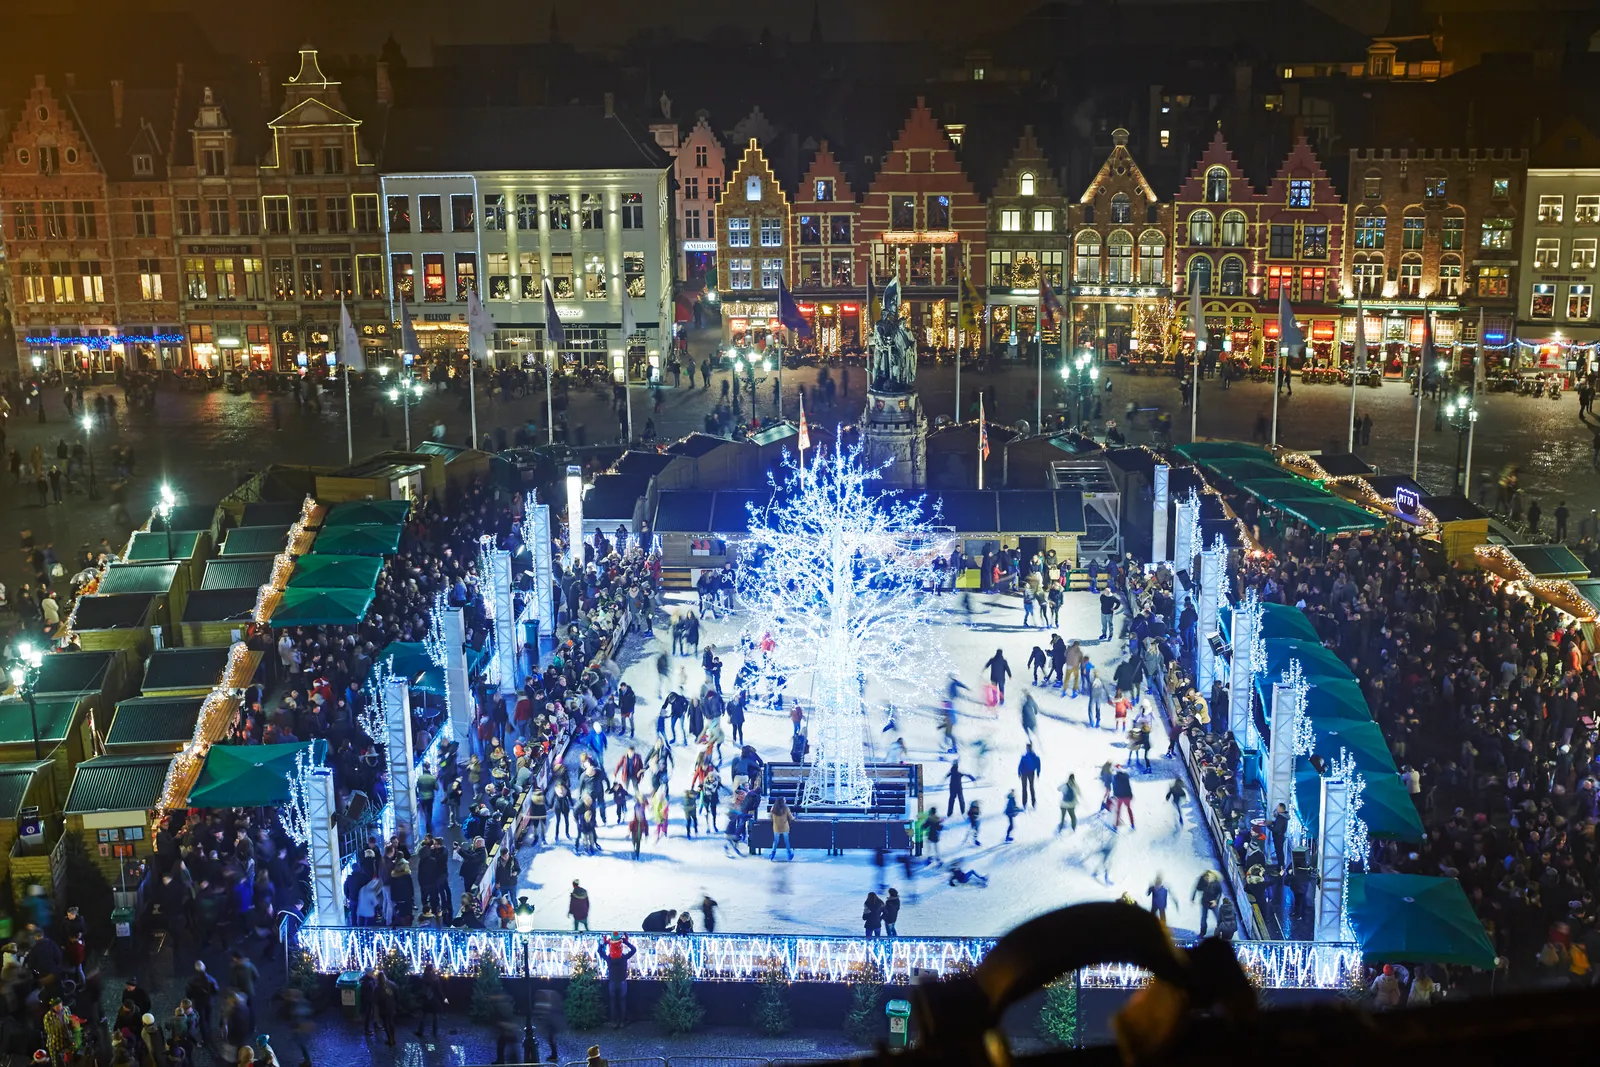 Bruges's Christmas market guide for 2022